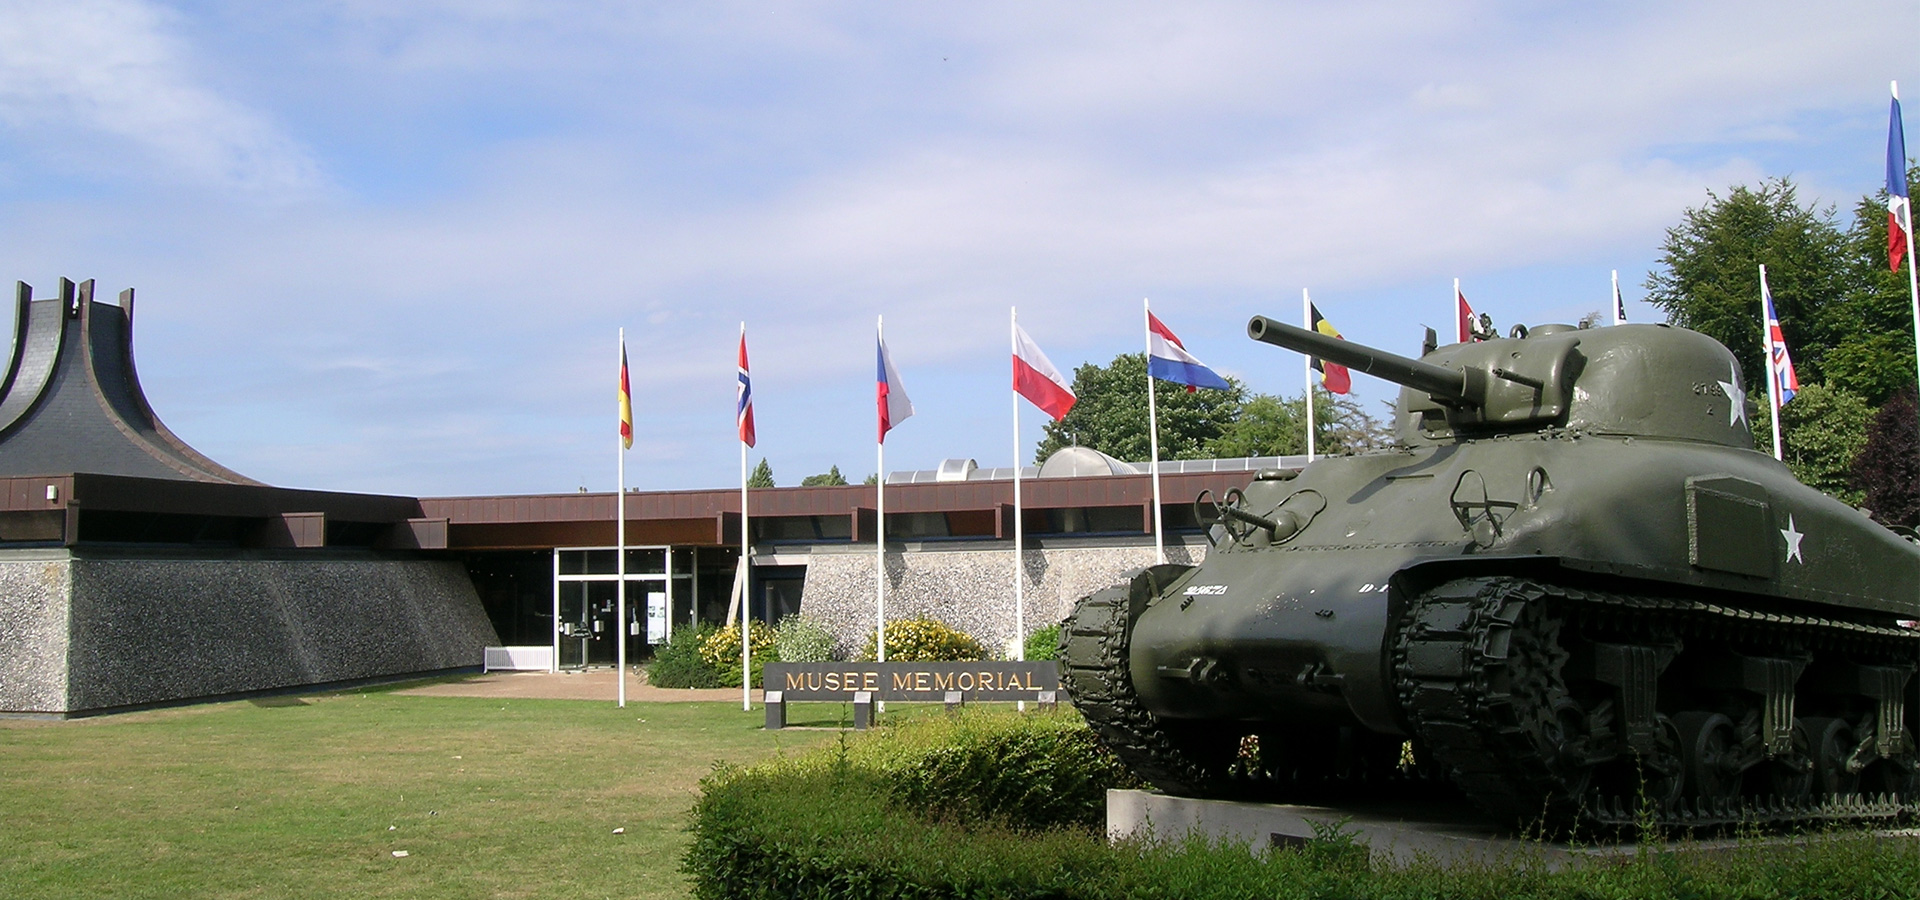 Musée mémorial de la bataille de Normandie